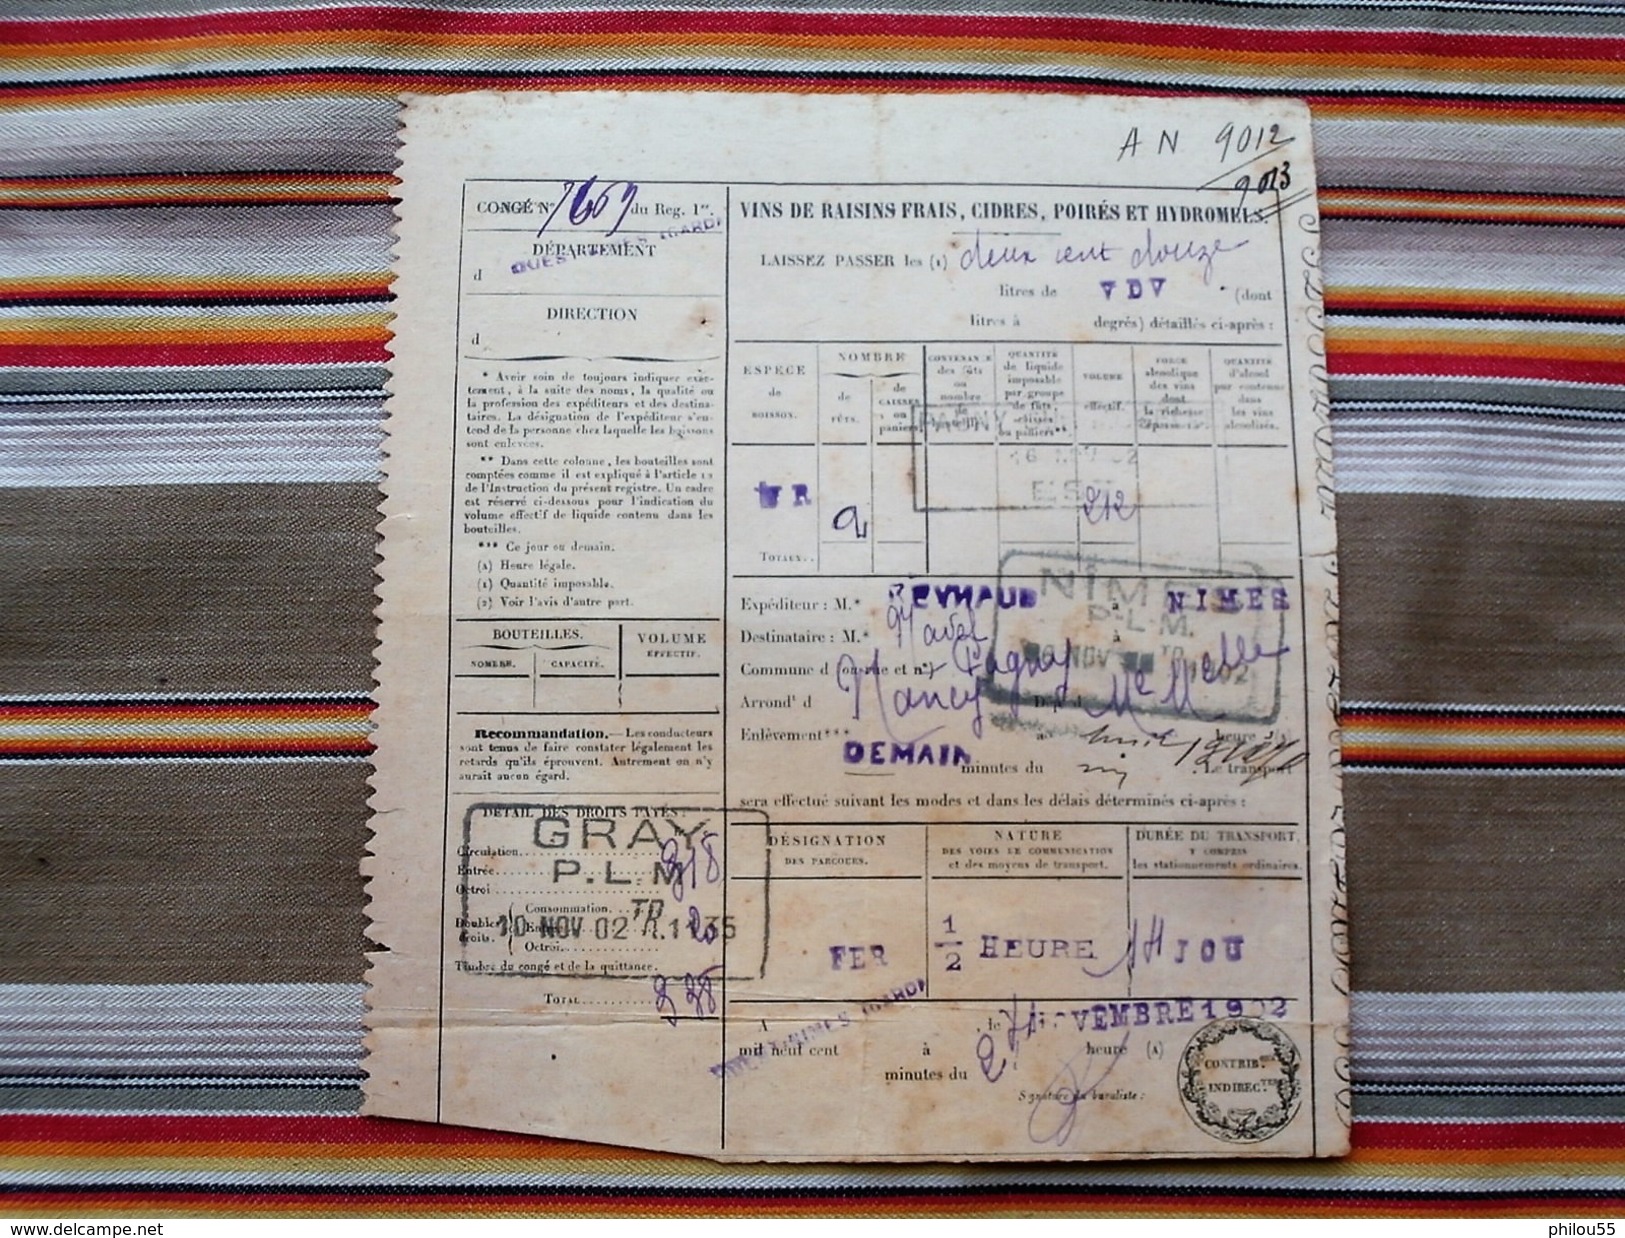 30 54 70 1902 document de transport de marchandises CHEMINS DE FER PLM + conge